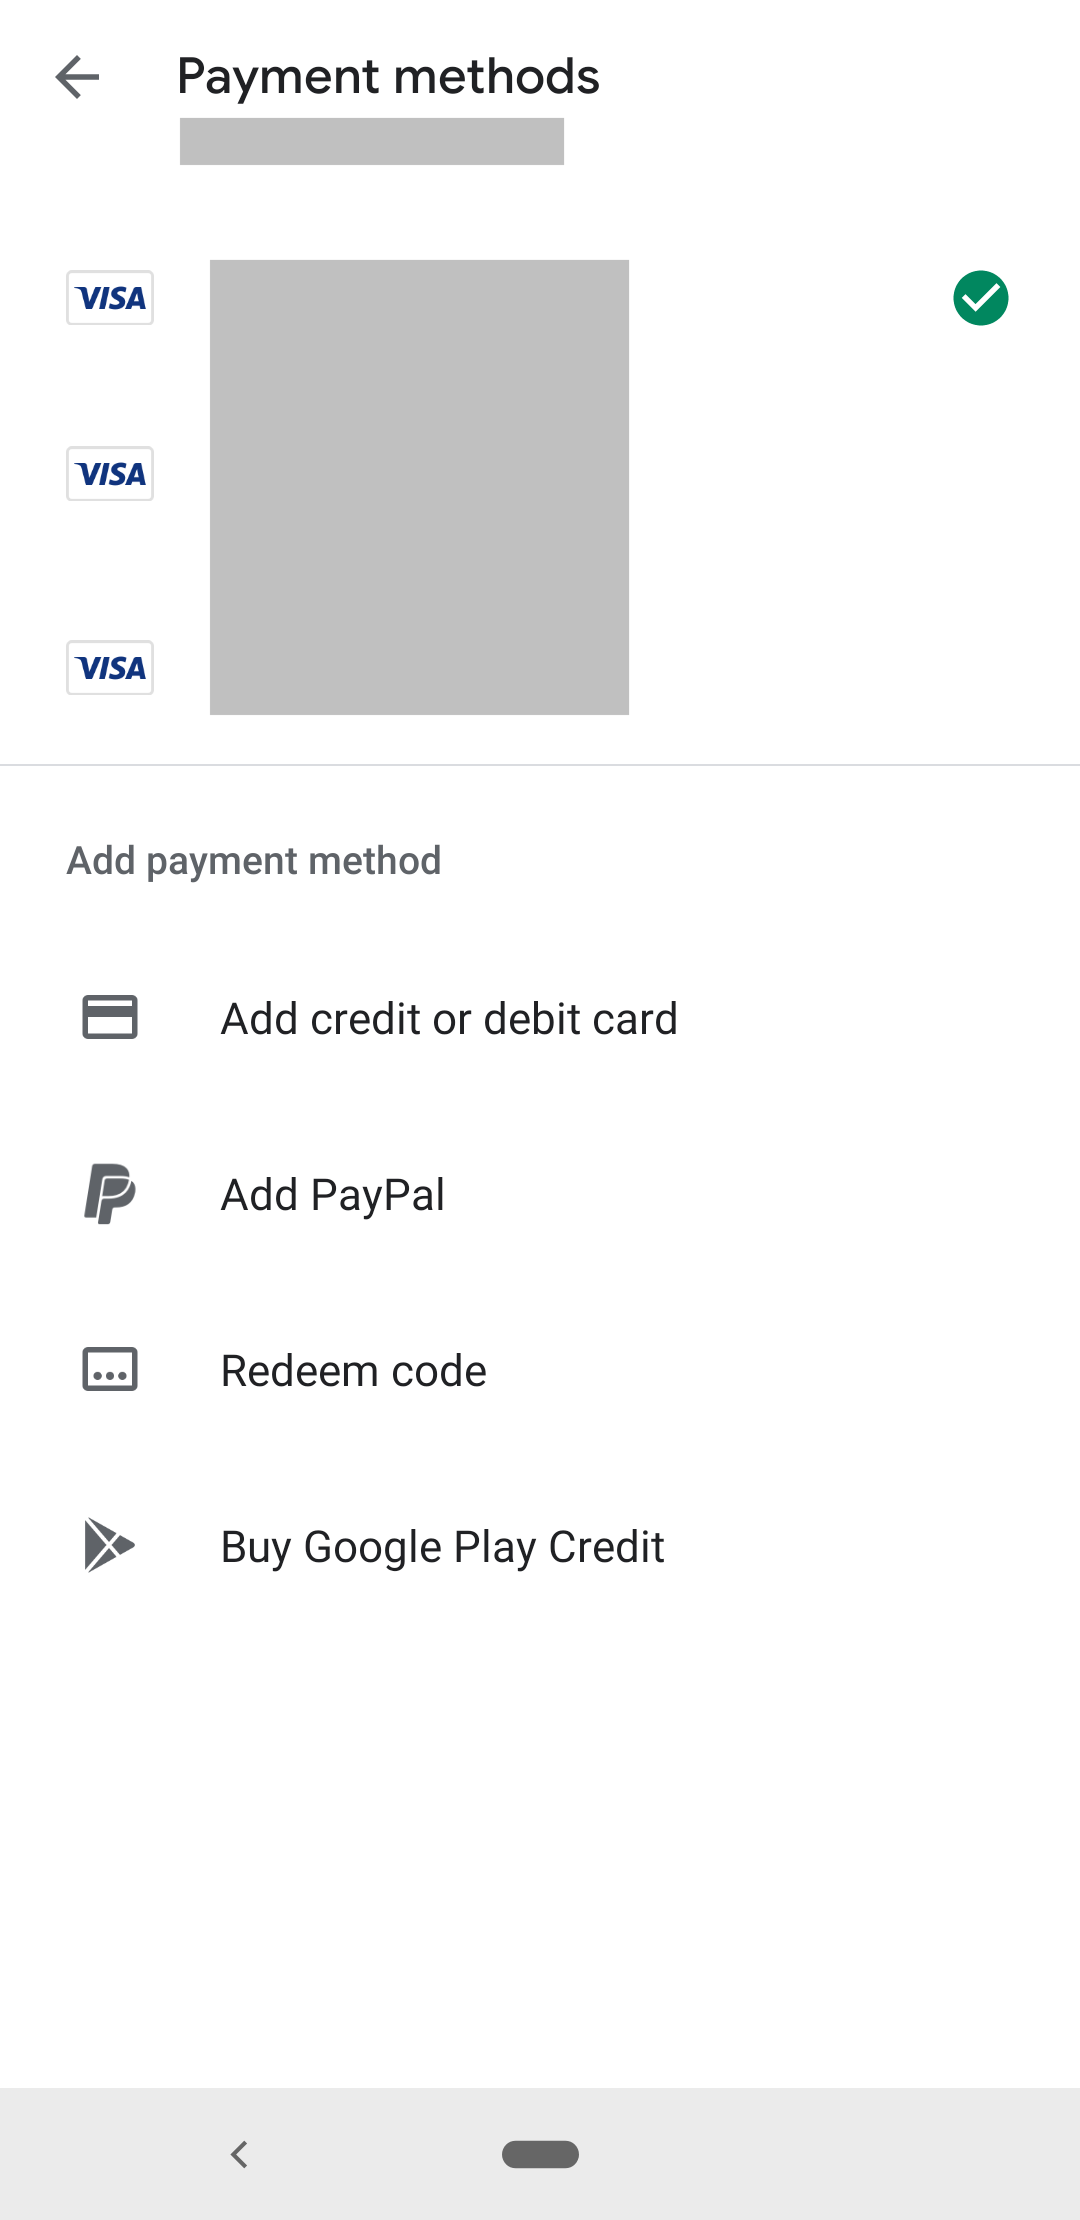 Uygulama içi satın alma işlemi için ödeme yöntemlerinin listelendiği ekran